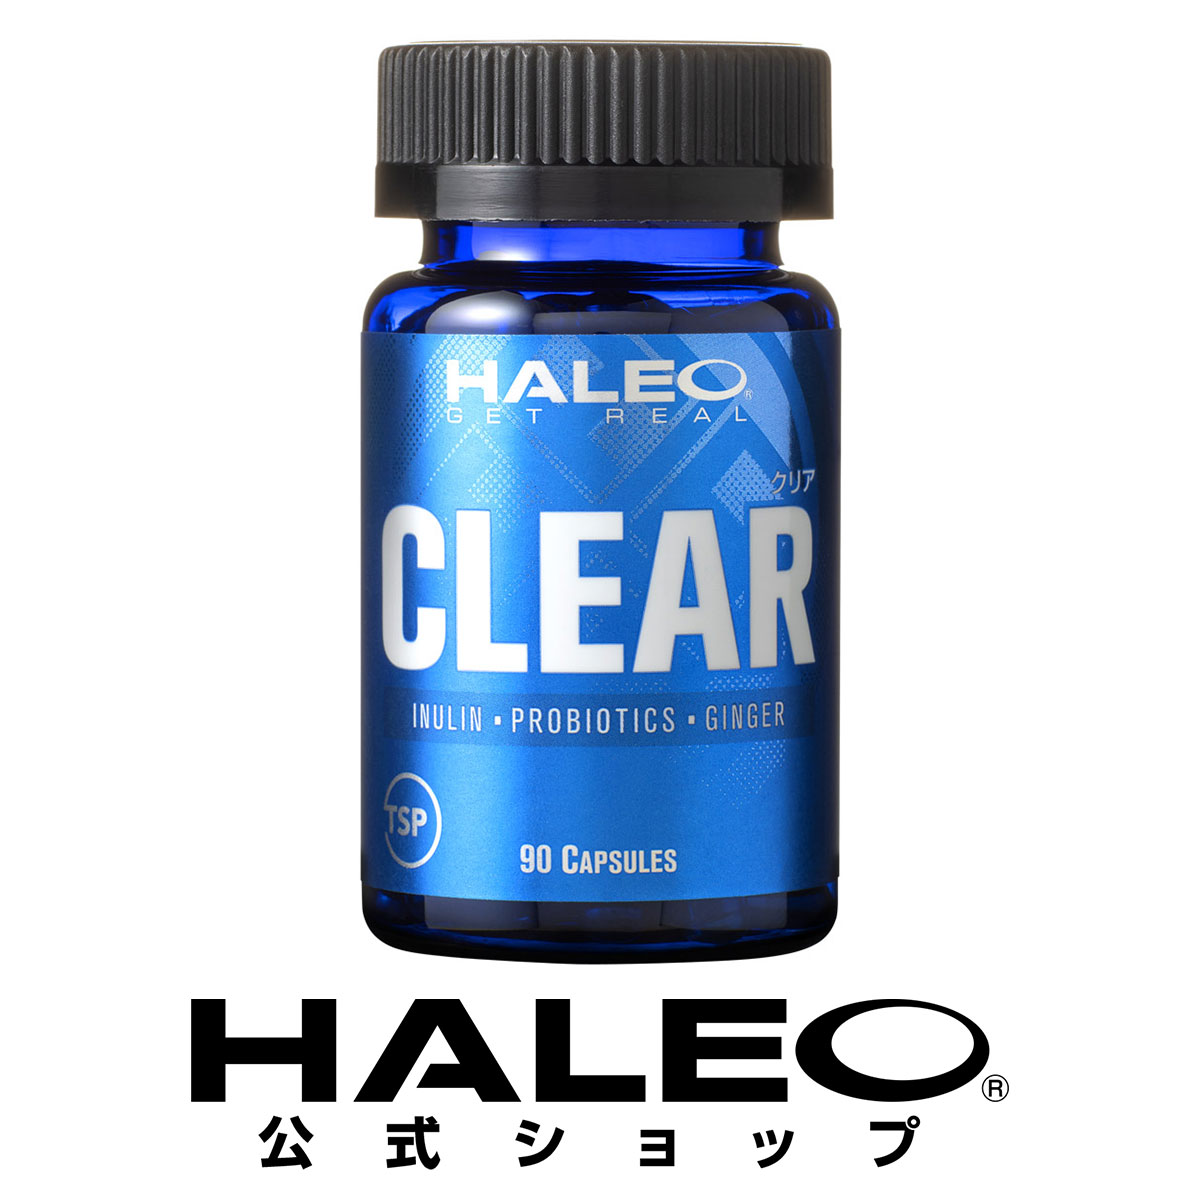 植物由来の酵素サプリメント キャンペーンもお見逃しなく HALEO ハレオ クリア CLEAR 90カプセル 消化酵素 イヌリン 新色追加して再販 乳酸菌